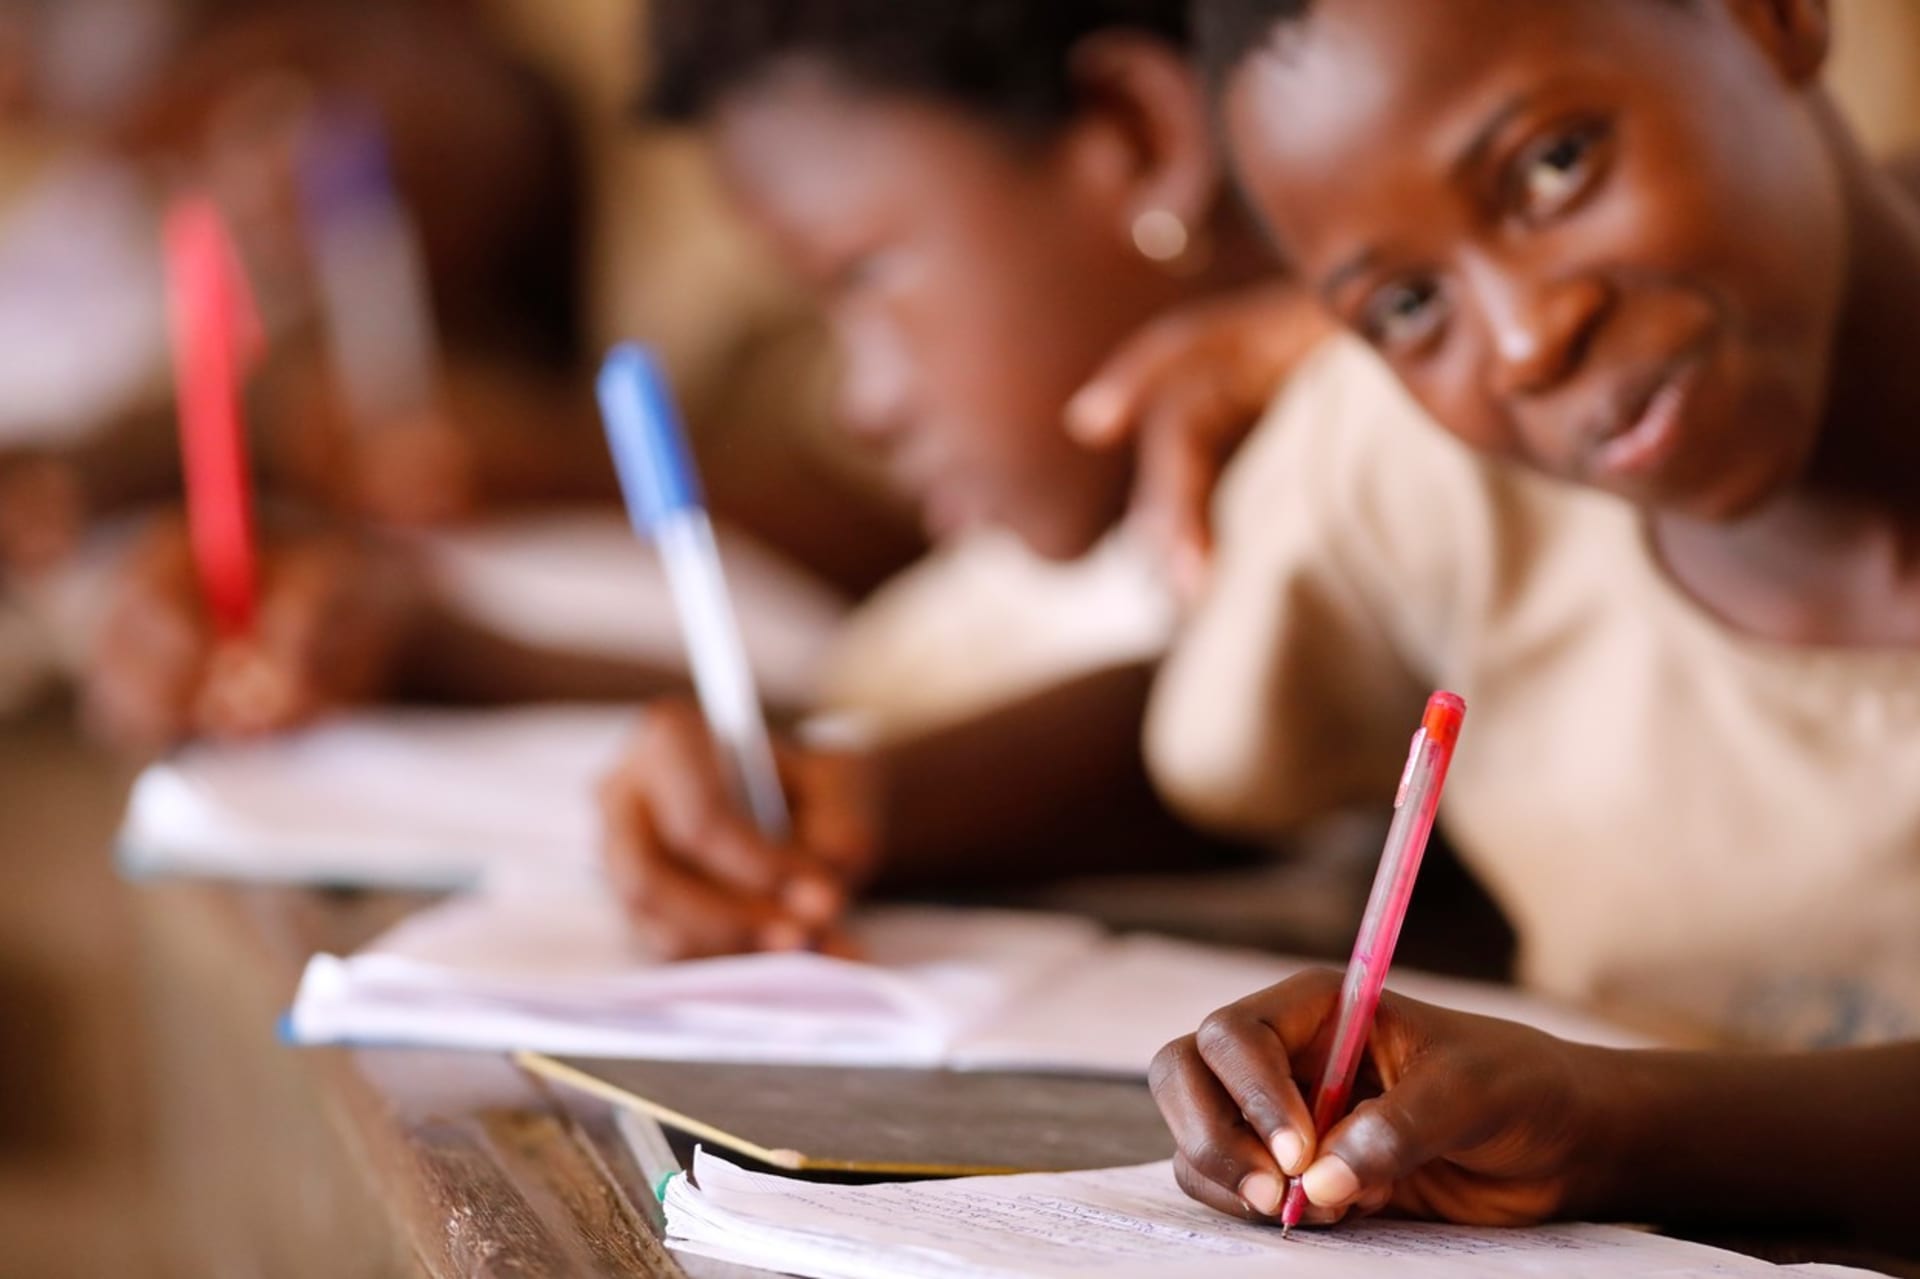 Podle organizace ONE žije 40 procent dětí, kterým hrozí, že už se nikdy nenaučí číst, v subsaharské Africe. (Ilustrační foto)